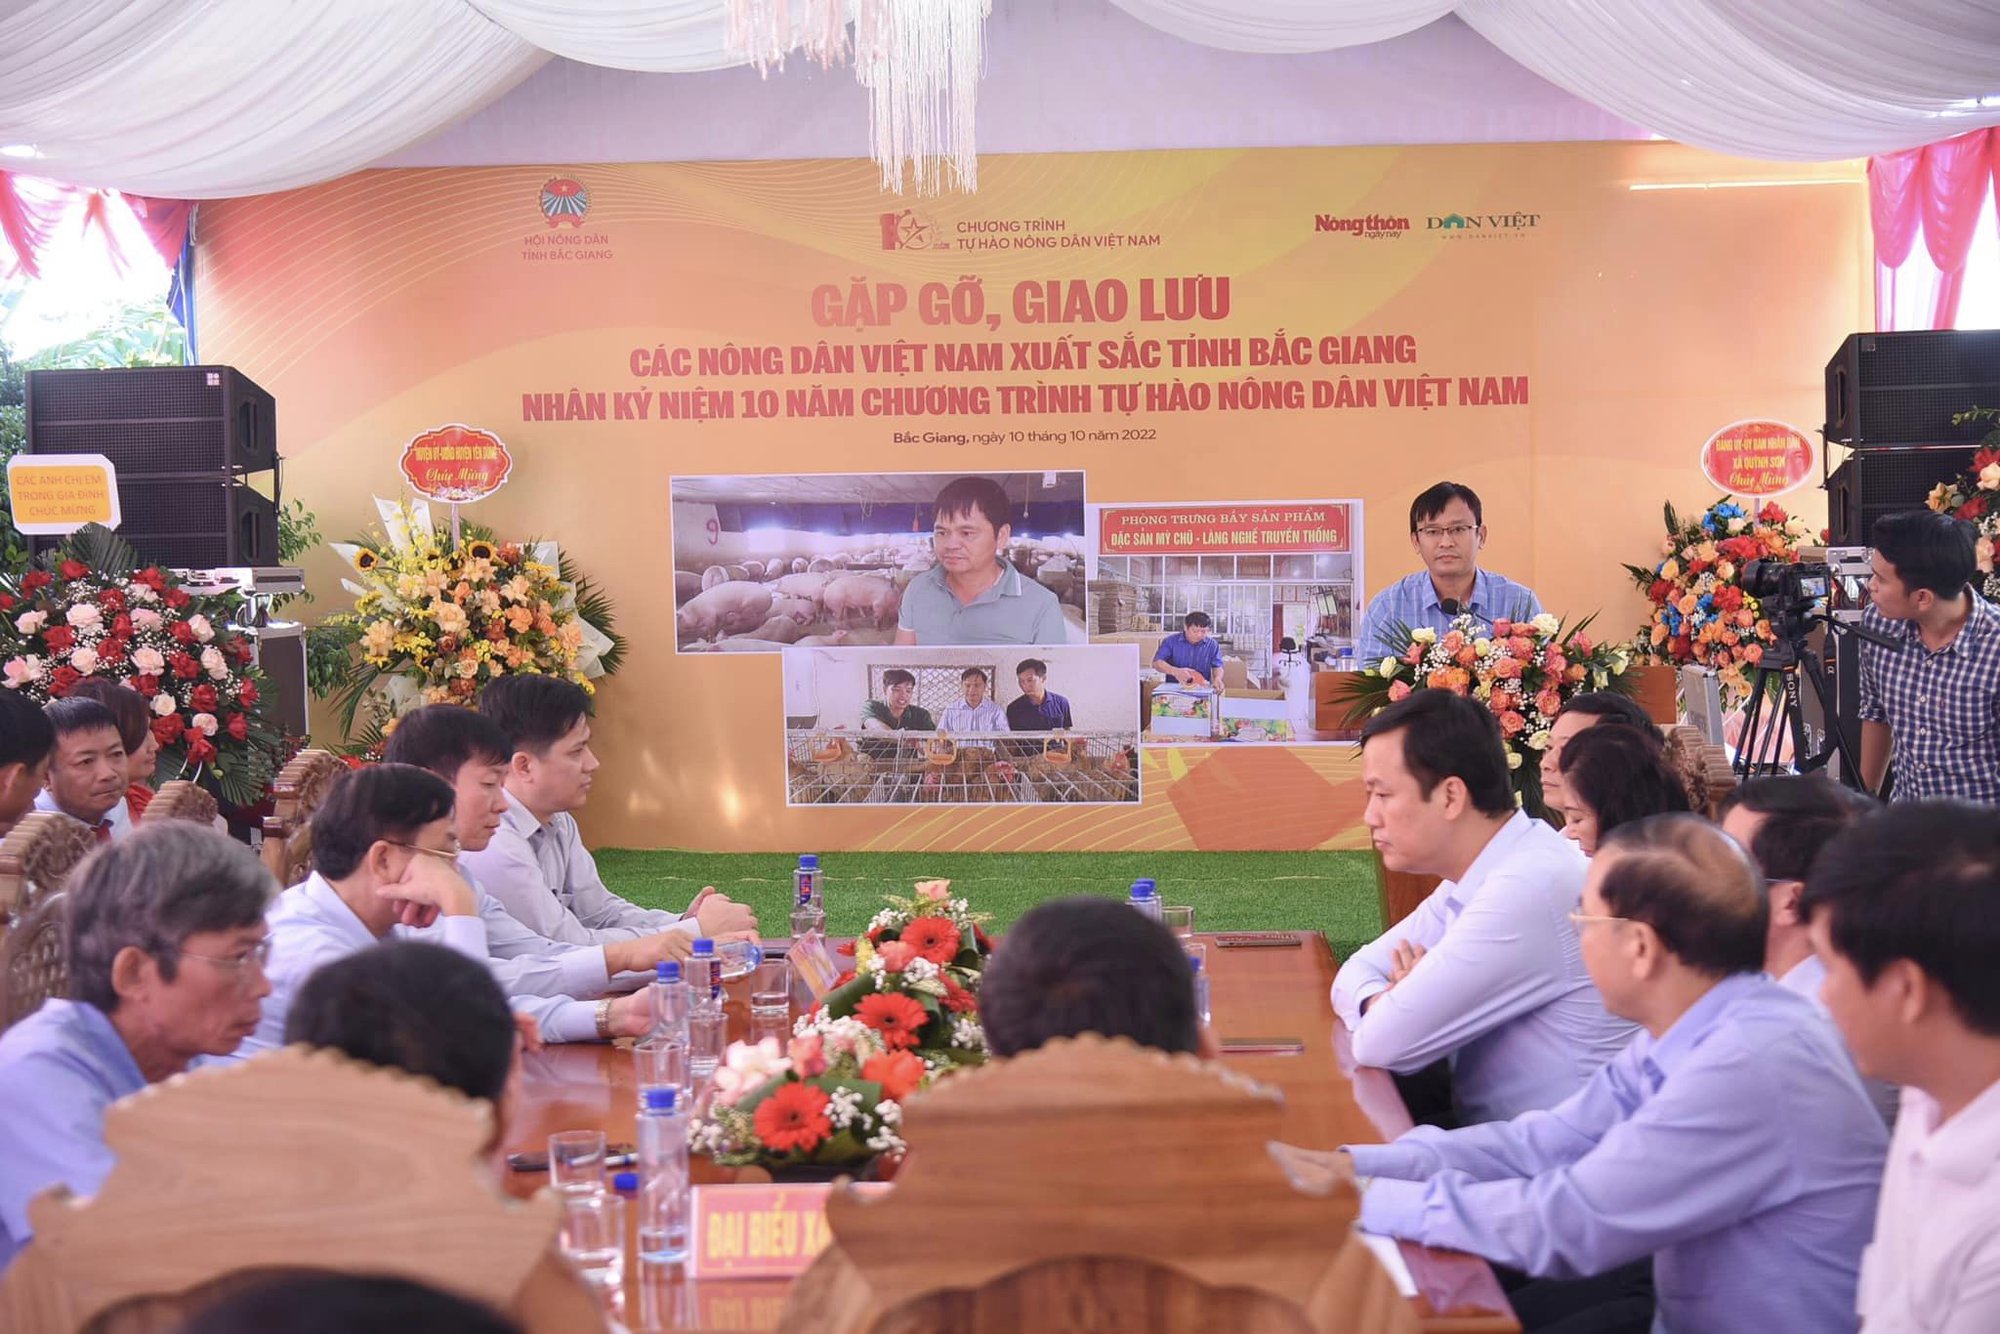 Báo NTNN/Dân Việt gặp gỡ, giao lưu với các Nông dân Việt Nam xuất sắc tỉnh Bắc Giang - Ảnh 2.